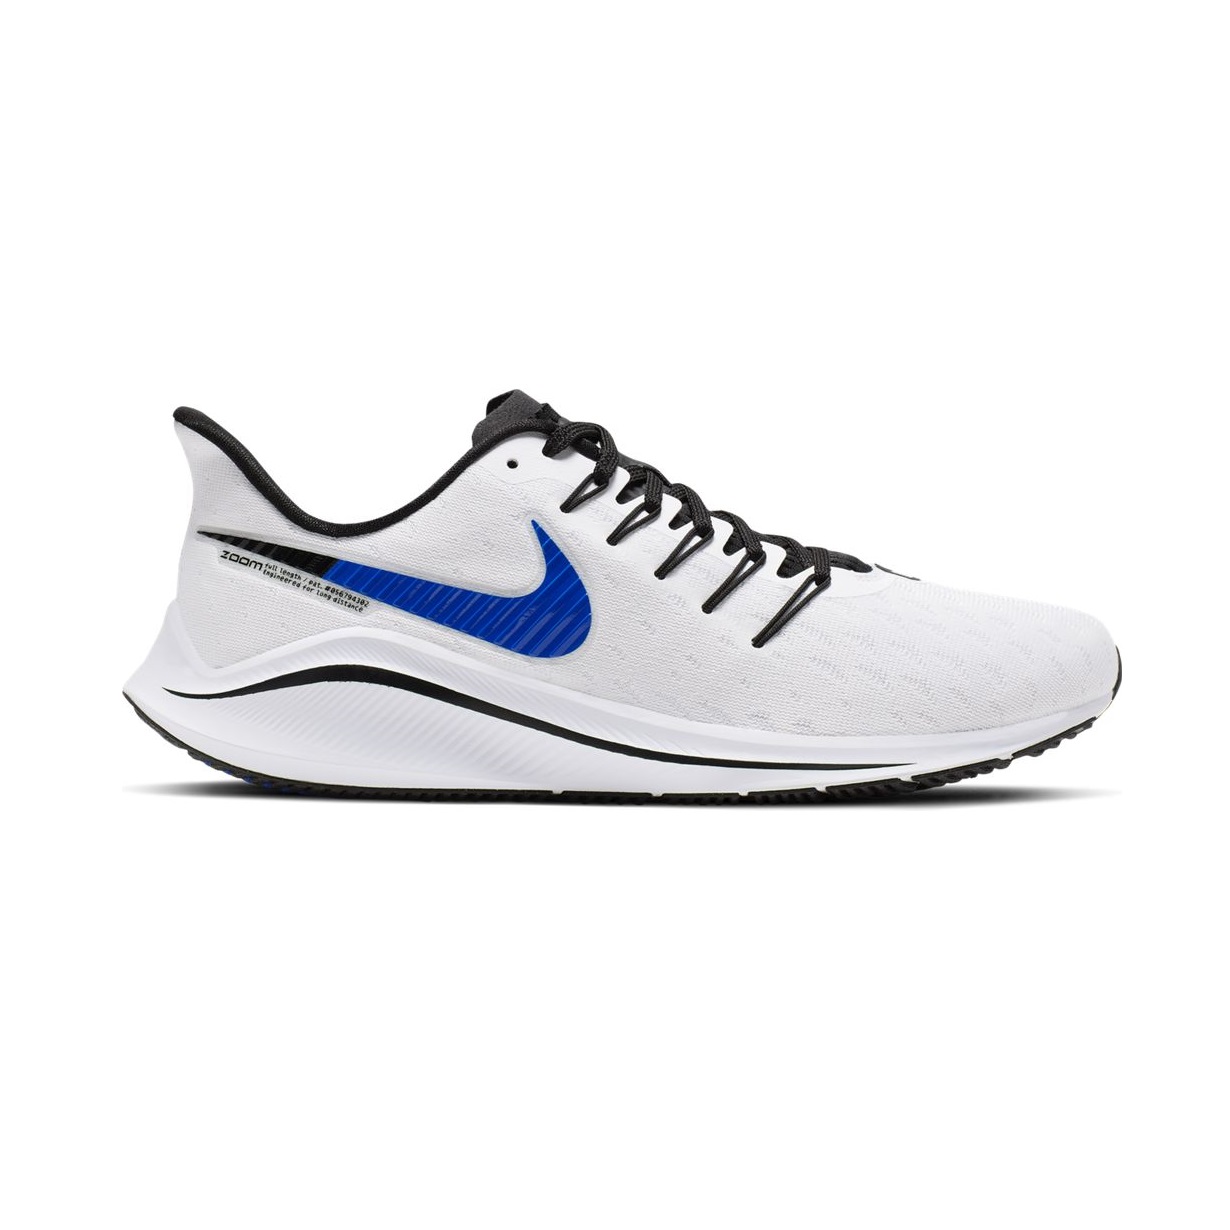 Zapatillas de running para hombre - Nike Air Zoom Vomero 14 - AH7857-101 | ferrersport.com | Tienda de deportes